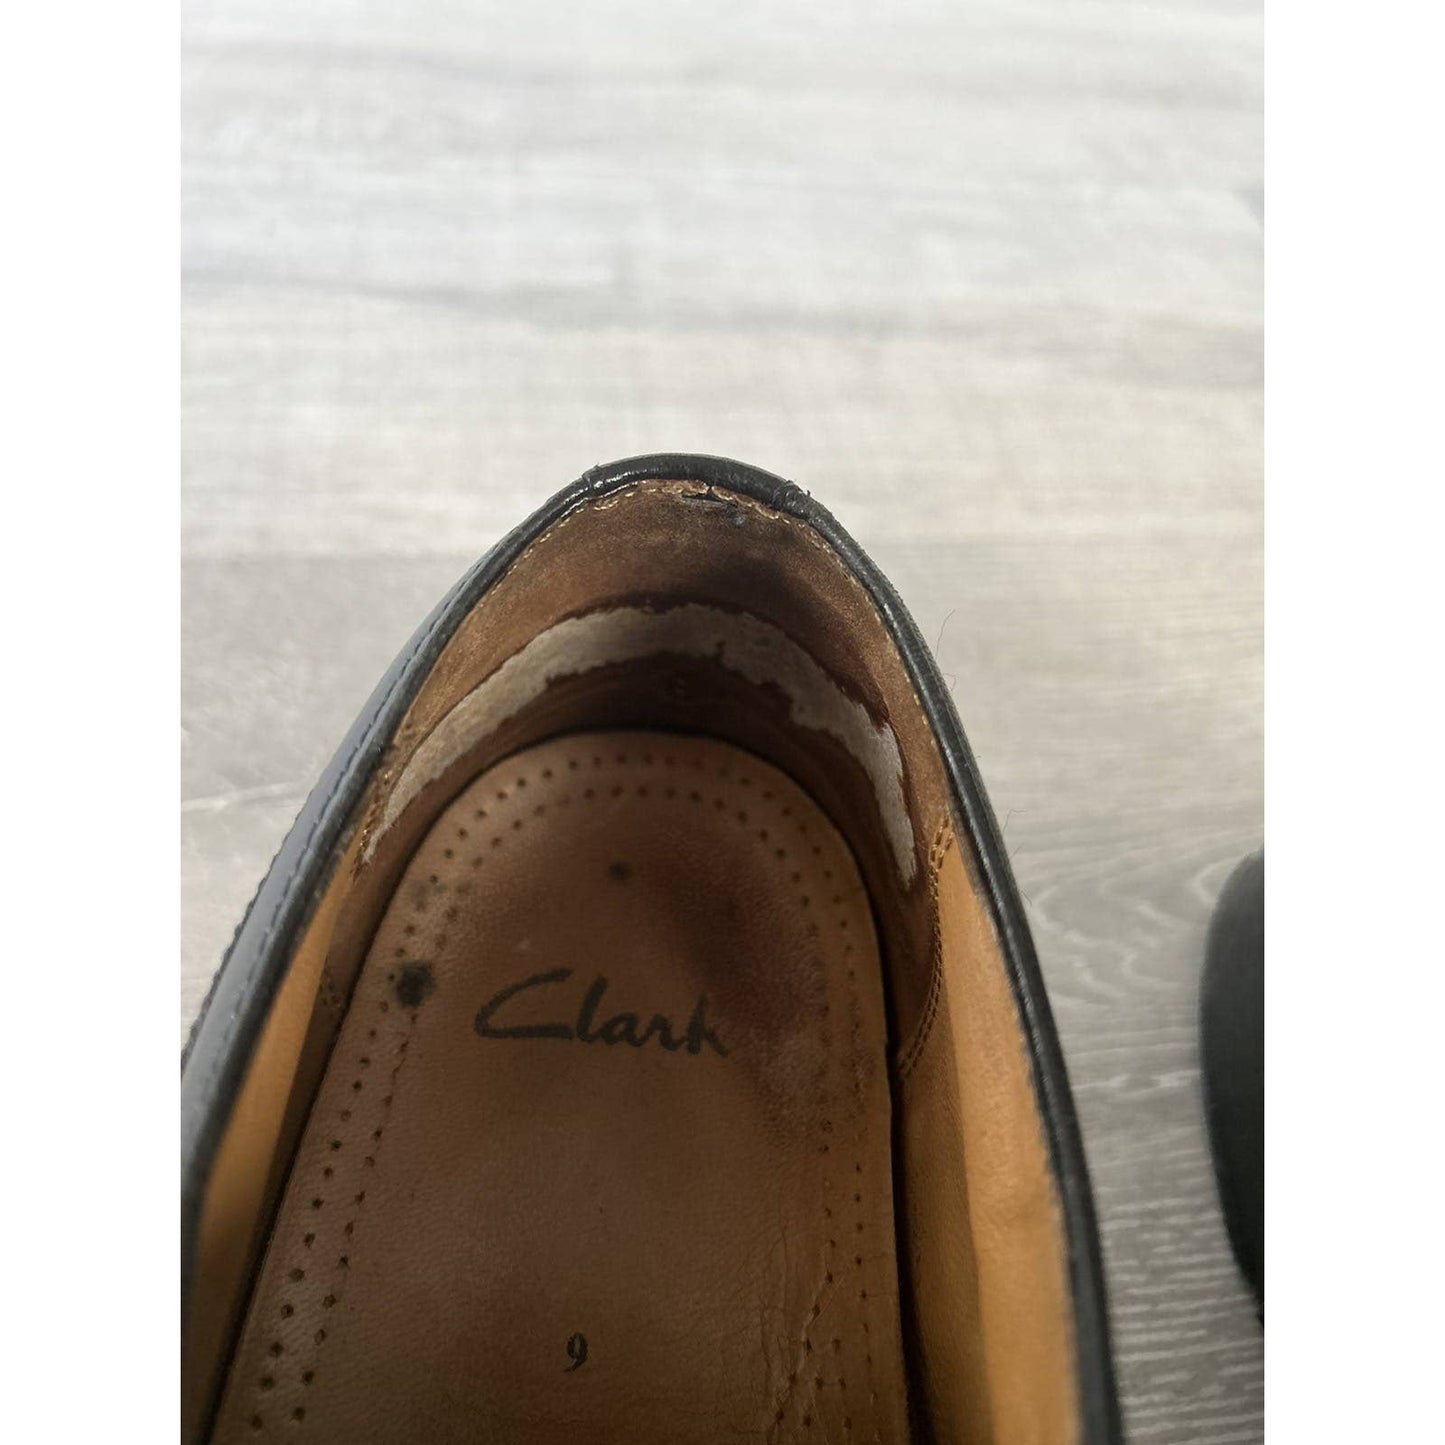 Clarks black leather shoes vintage